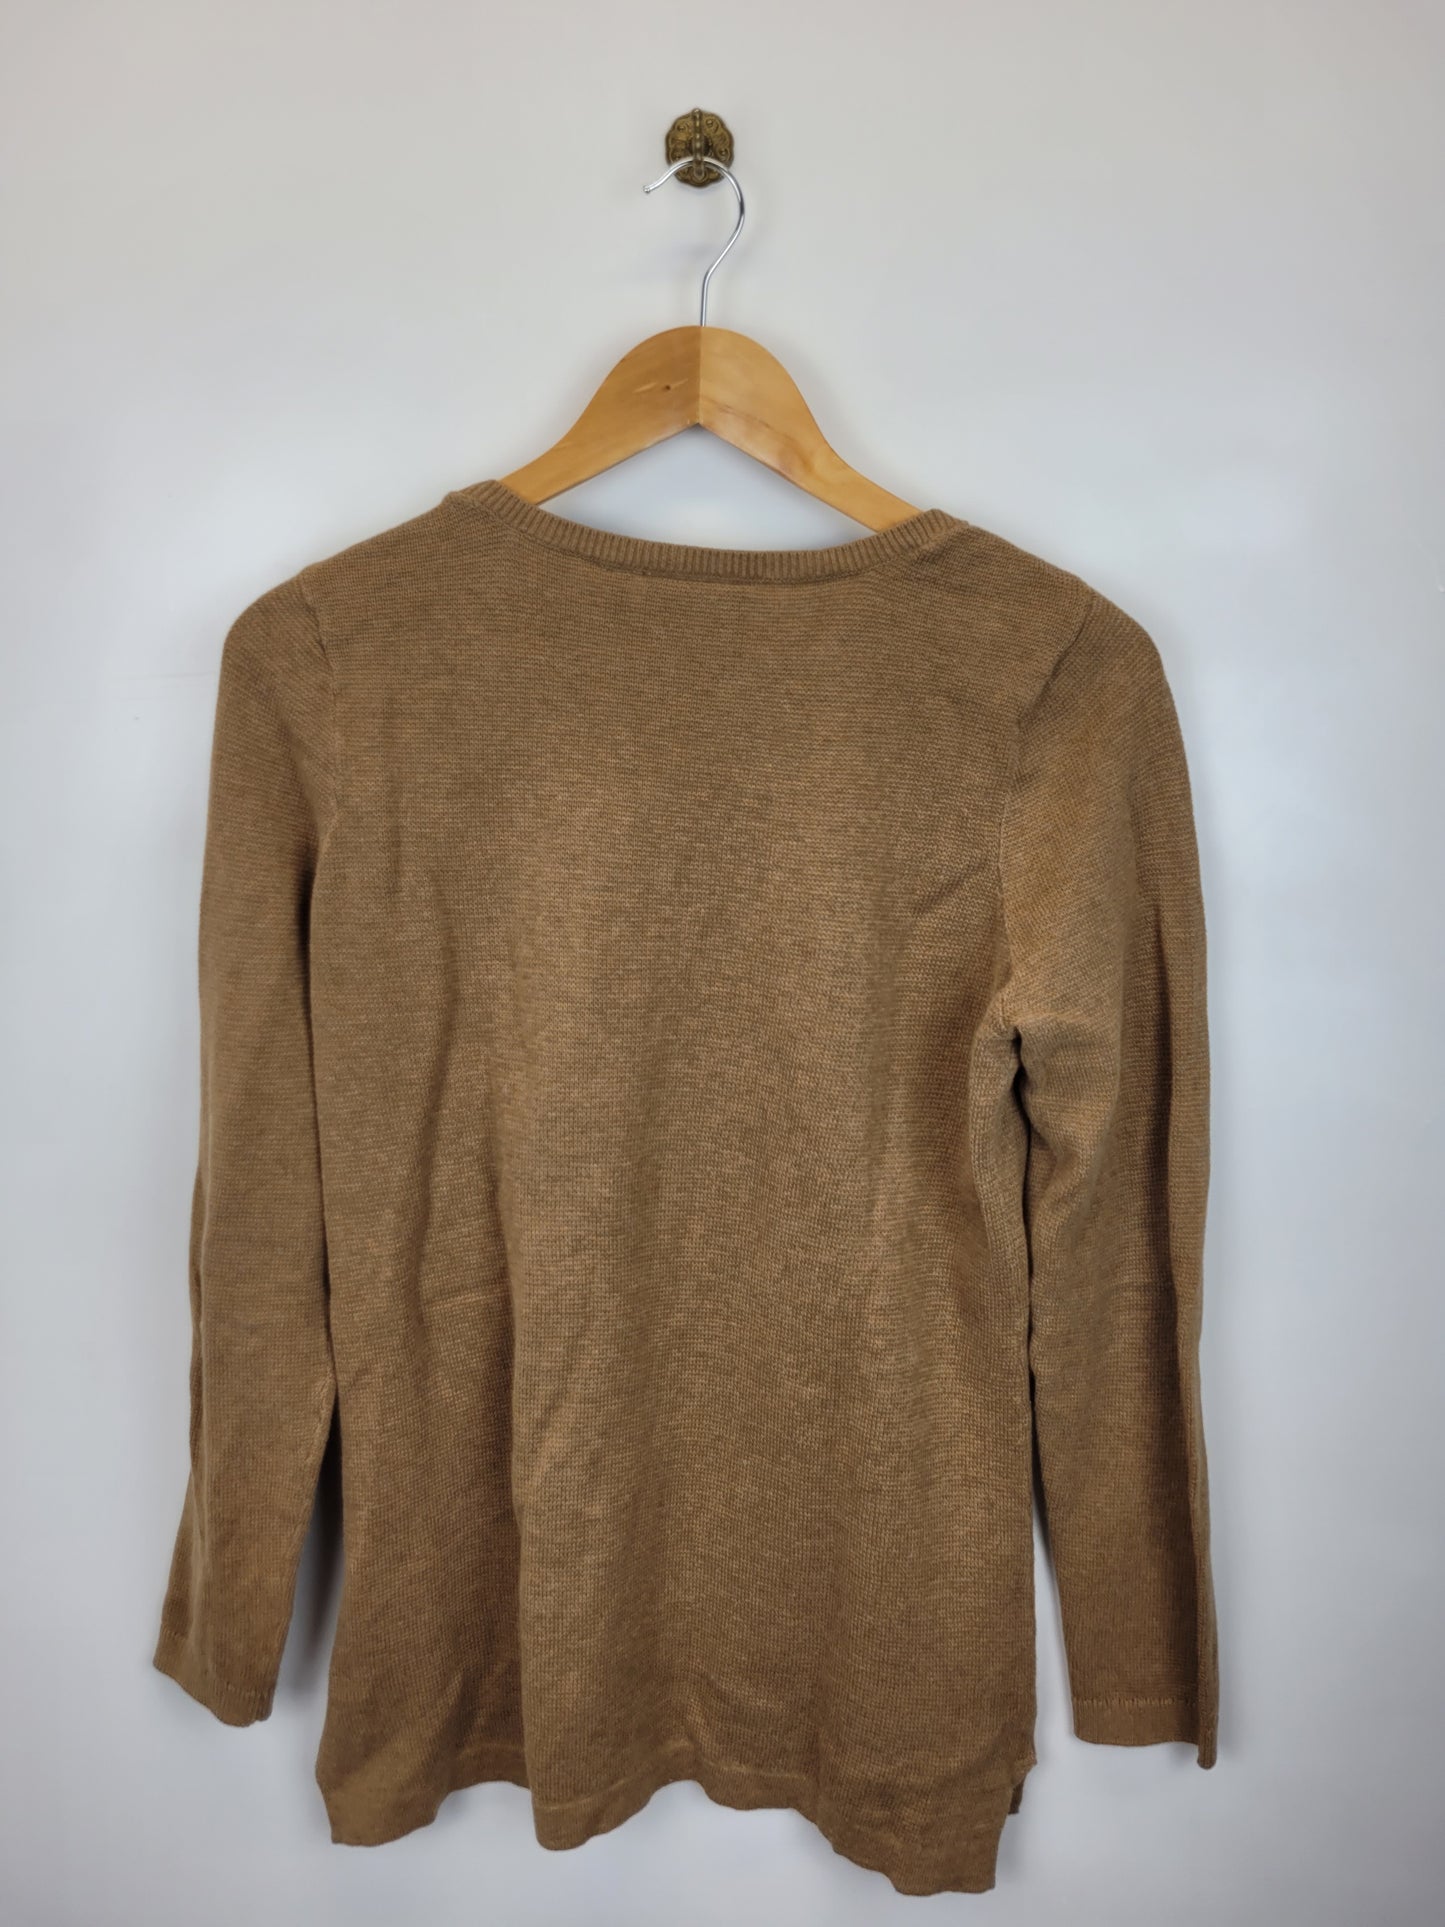 Brauner High Coast Knit Sweater / Pullover von Fjällräven in Größe S (Damen) - wanderlich.com